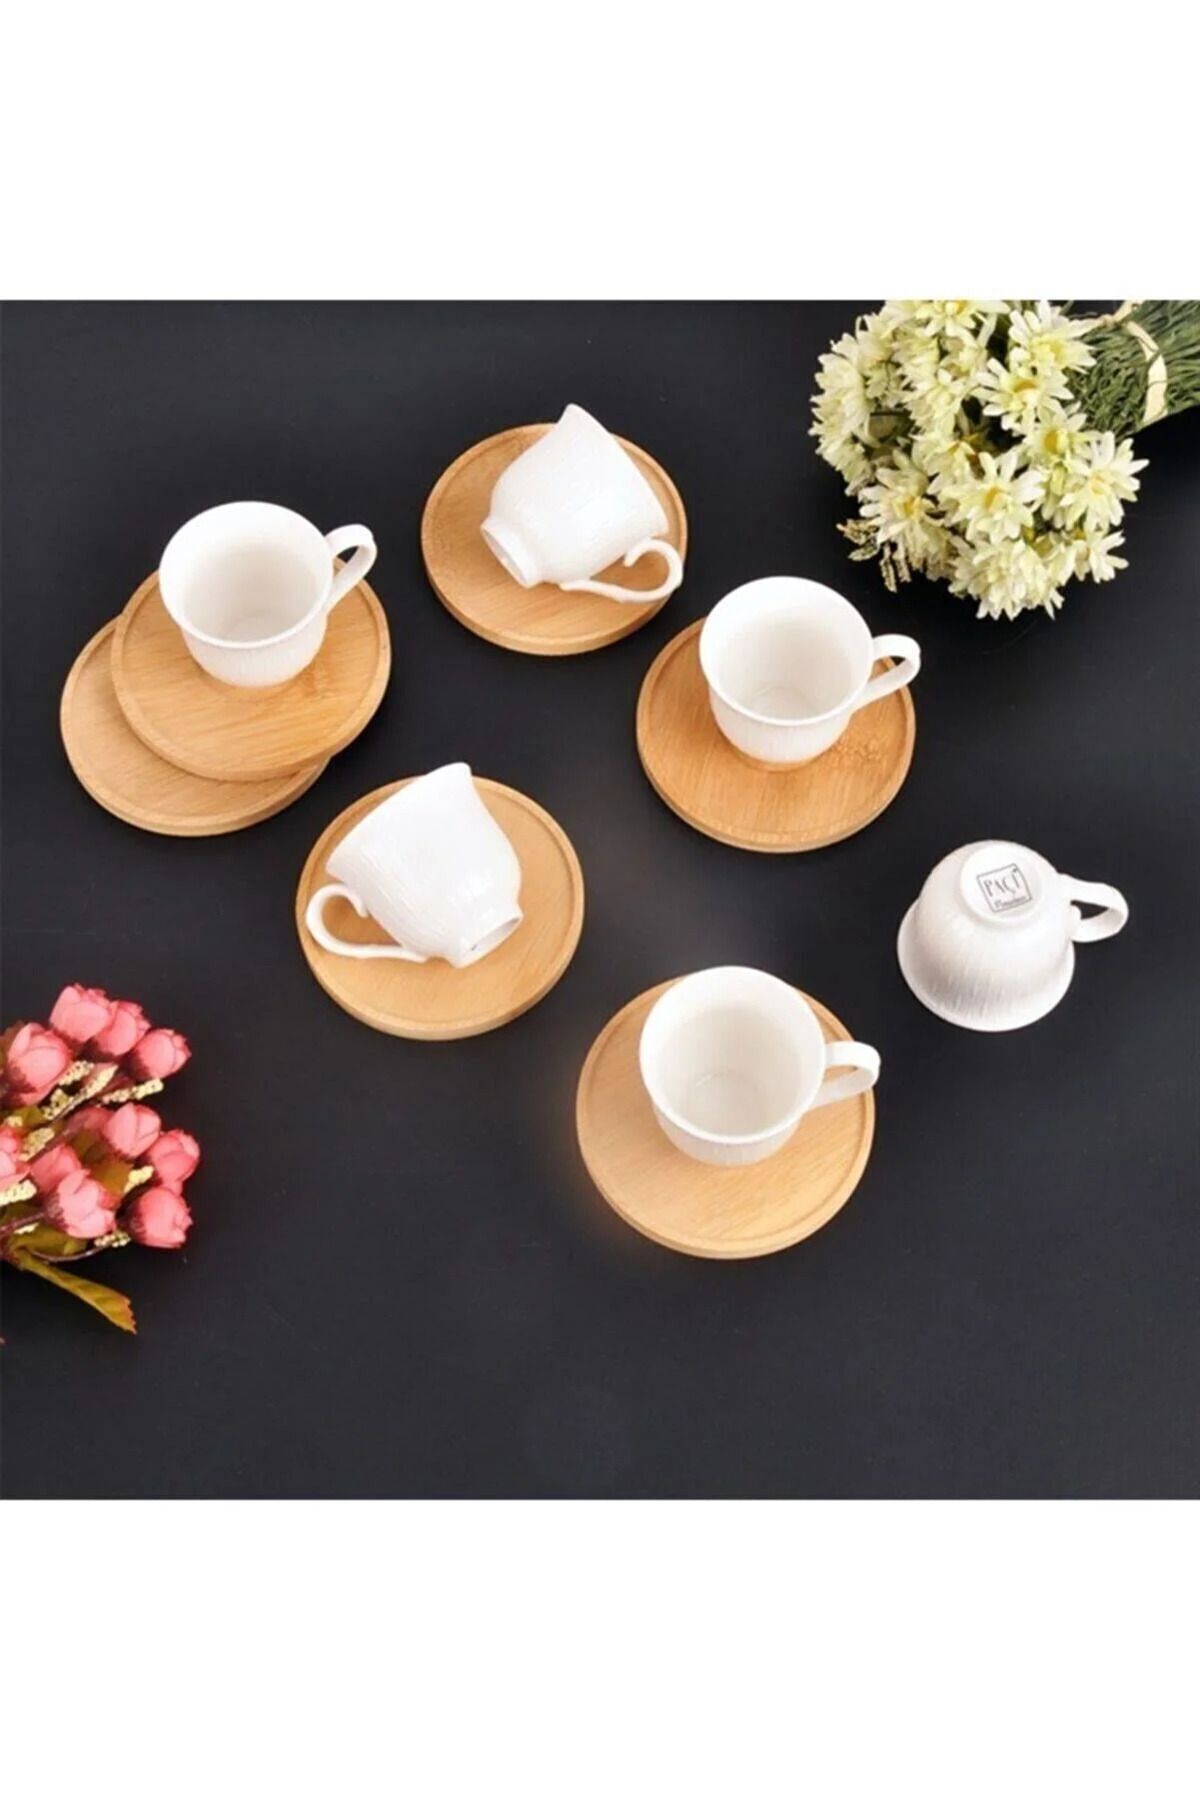 Rossel Premium Bambulu Porselen 6'lı Kahve Fincan Takımı Por-101136